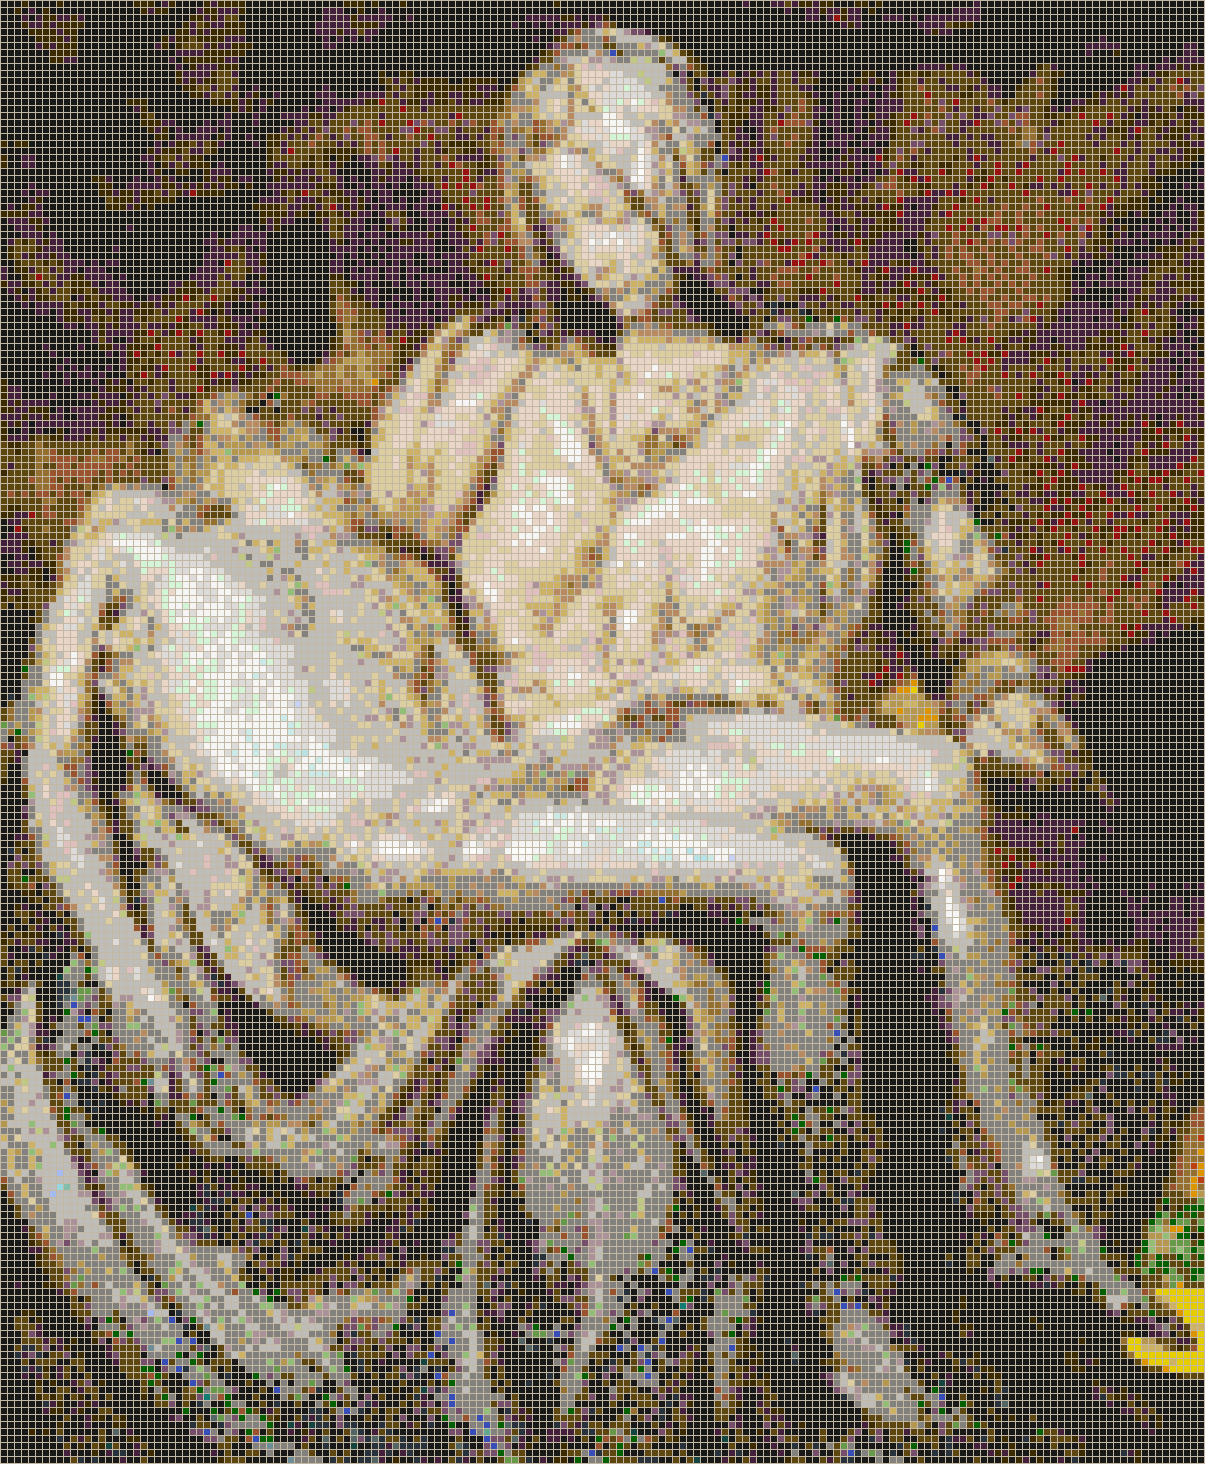 Michelangelo's Pietà - Mosaic Tile Art